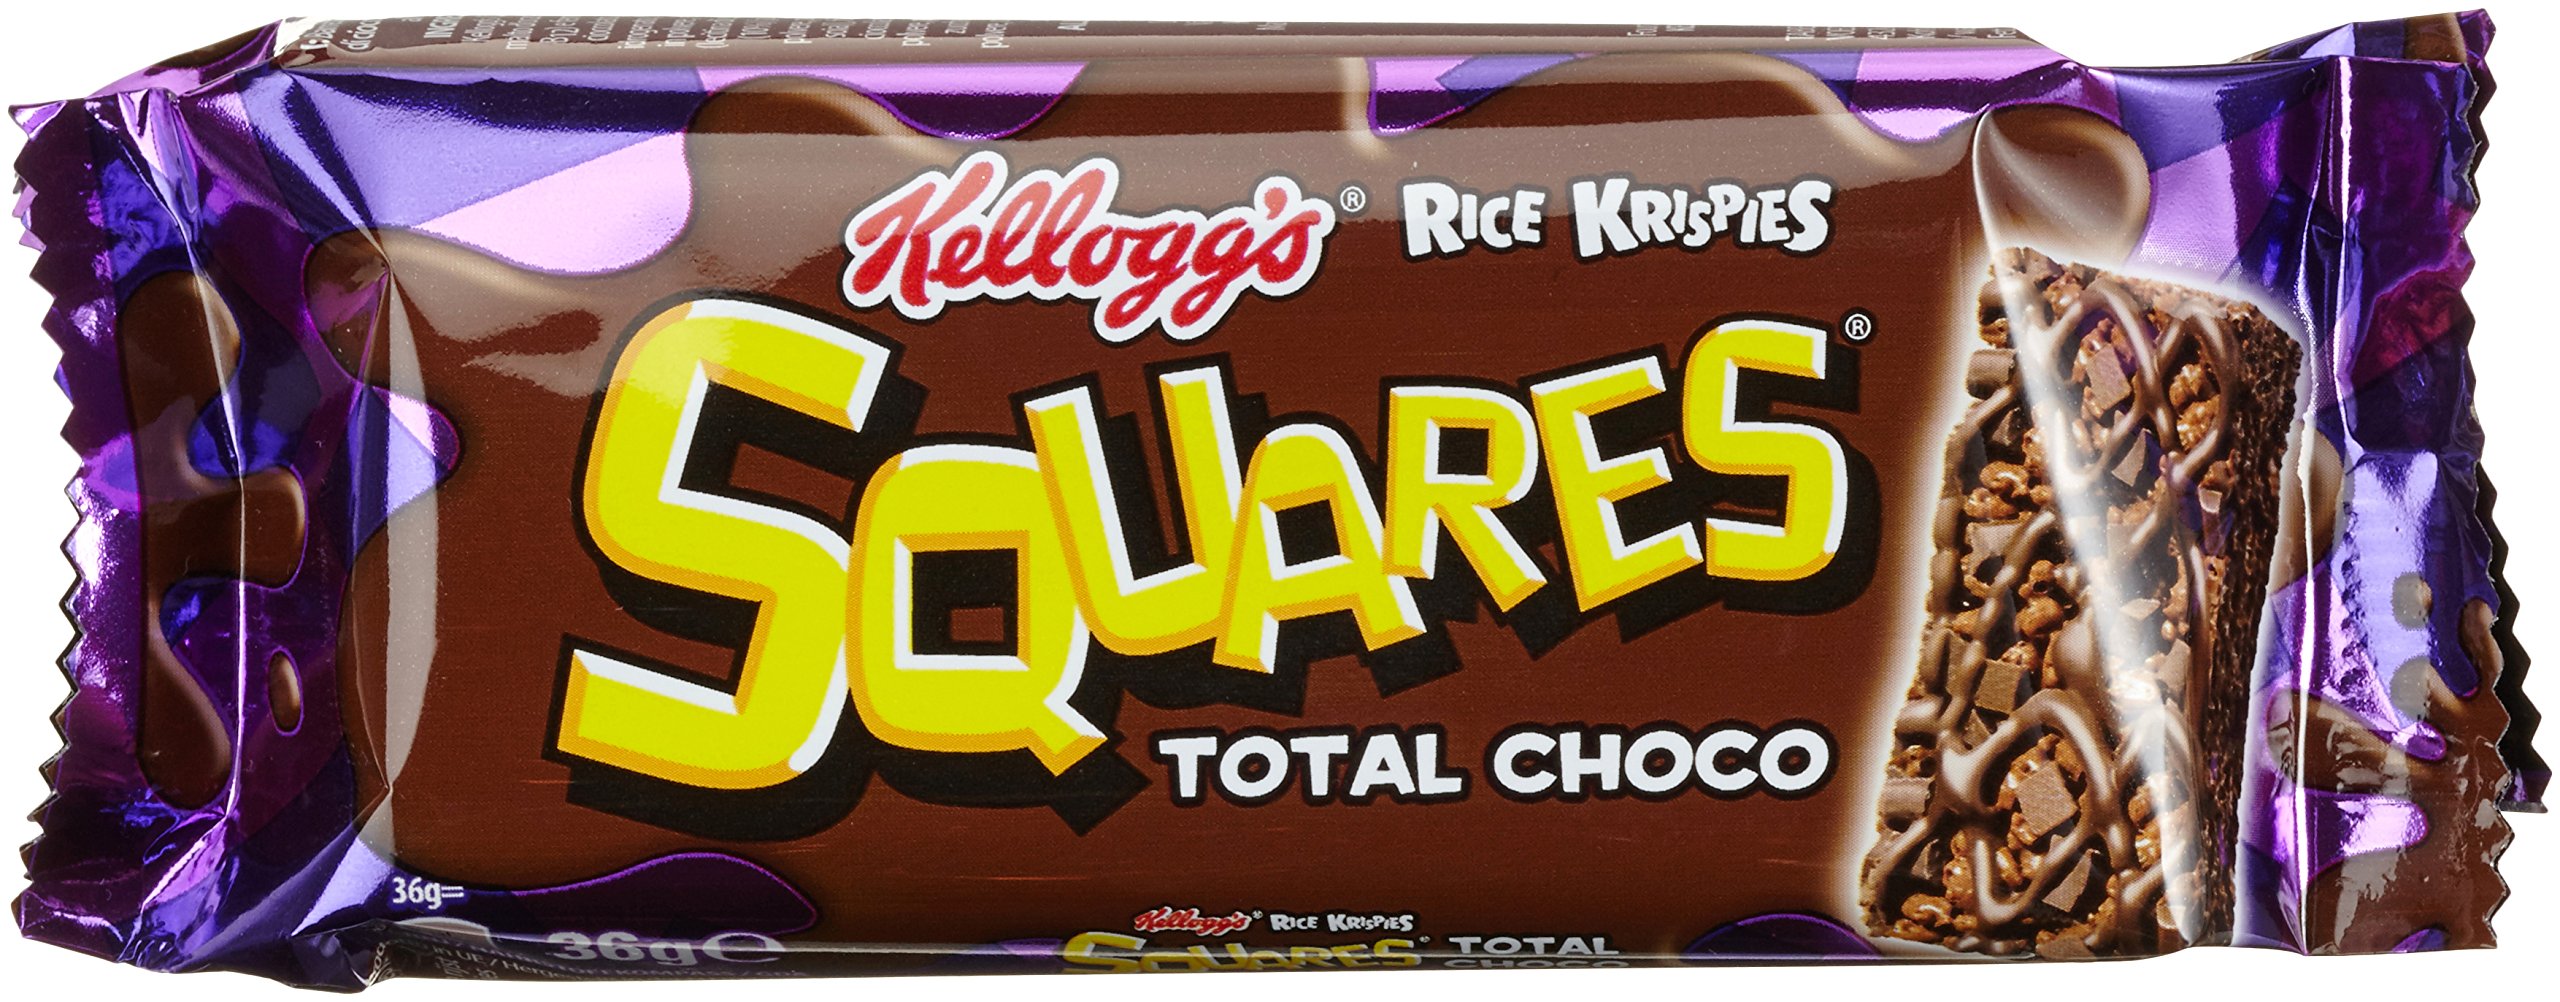 Kellogg's Rice Krispies Squares Total Choco, 30er Pack (30 x 36 g Karton)